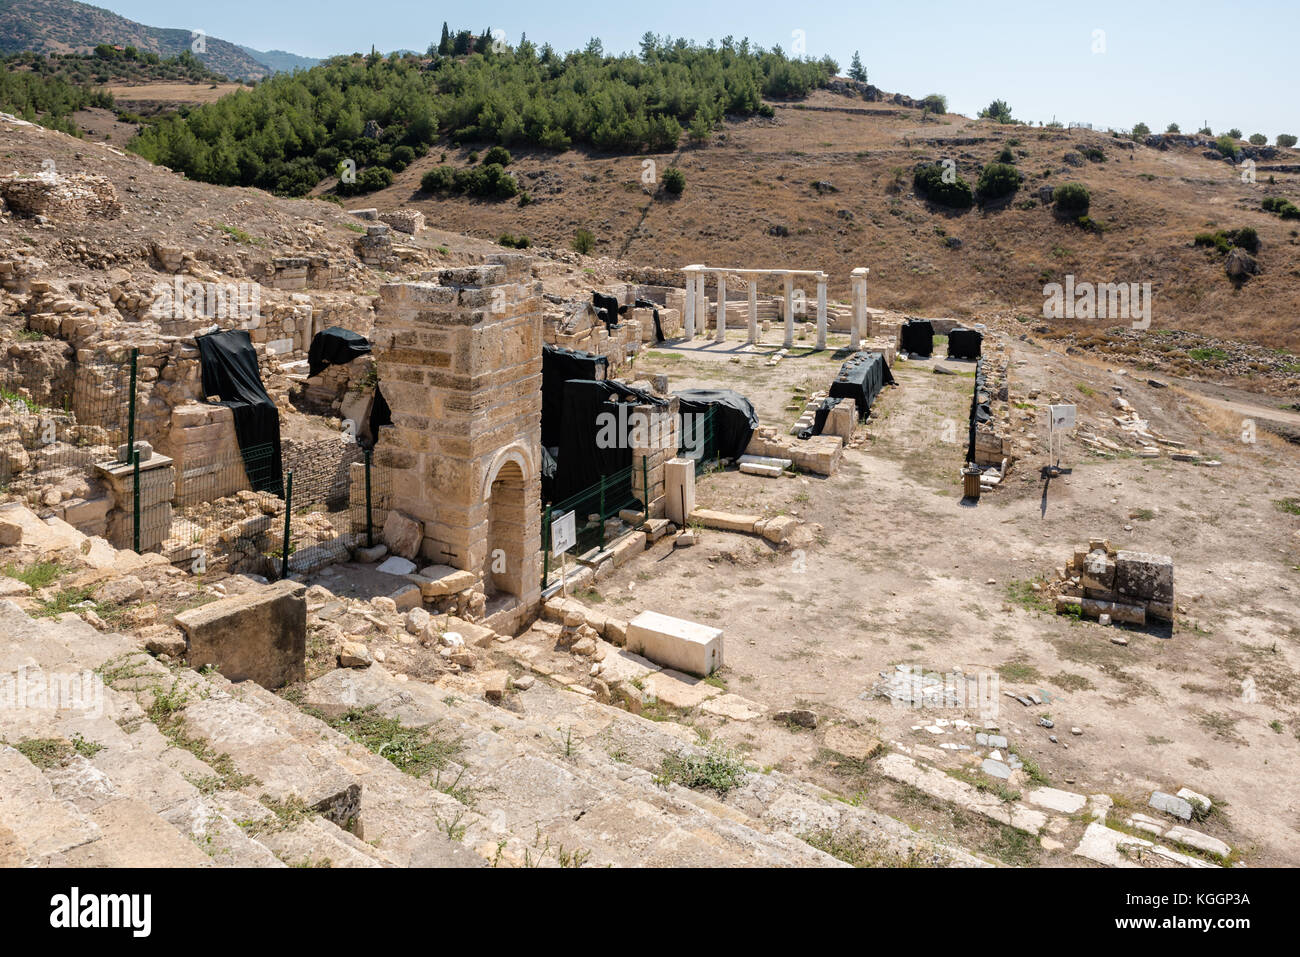 Tombe de saint.philip et aghiasma sanctuaire (fontaine) dans l'ancienne ville grecque Hiérapolis, Pamukkale, Turquie. Banque D'Images